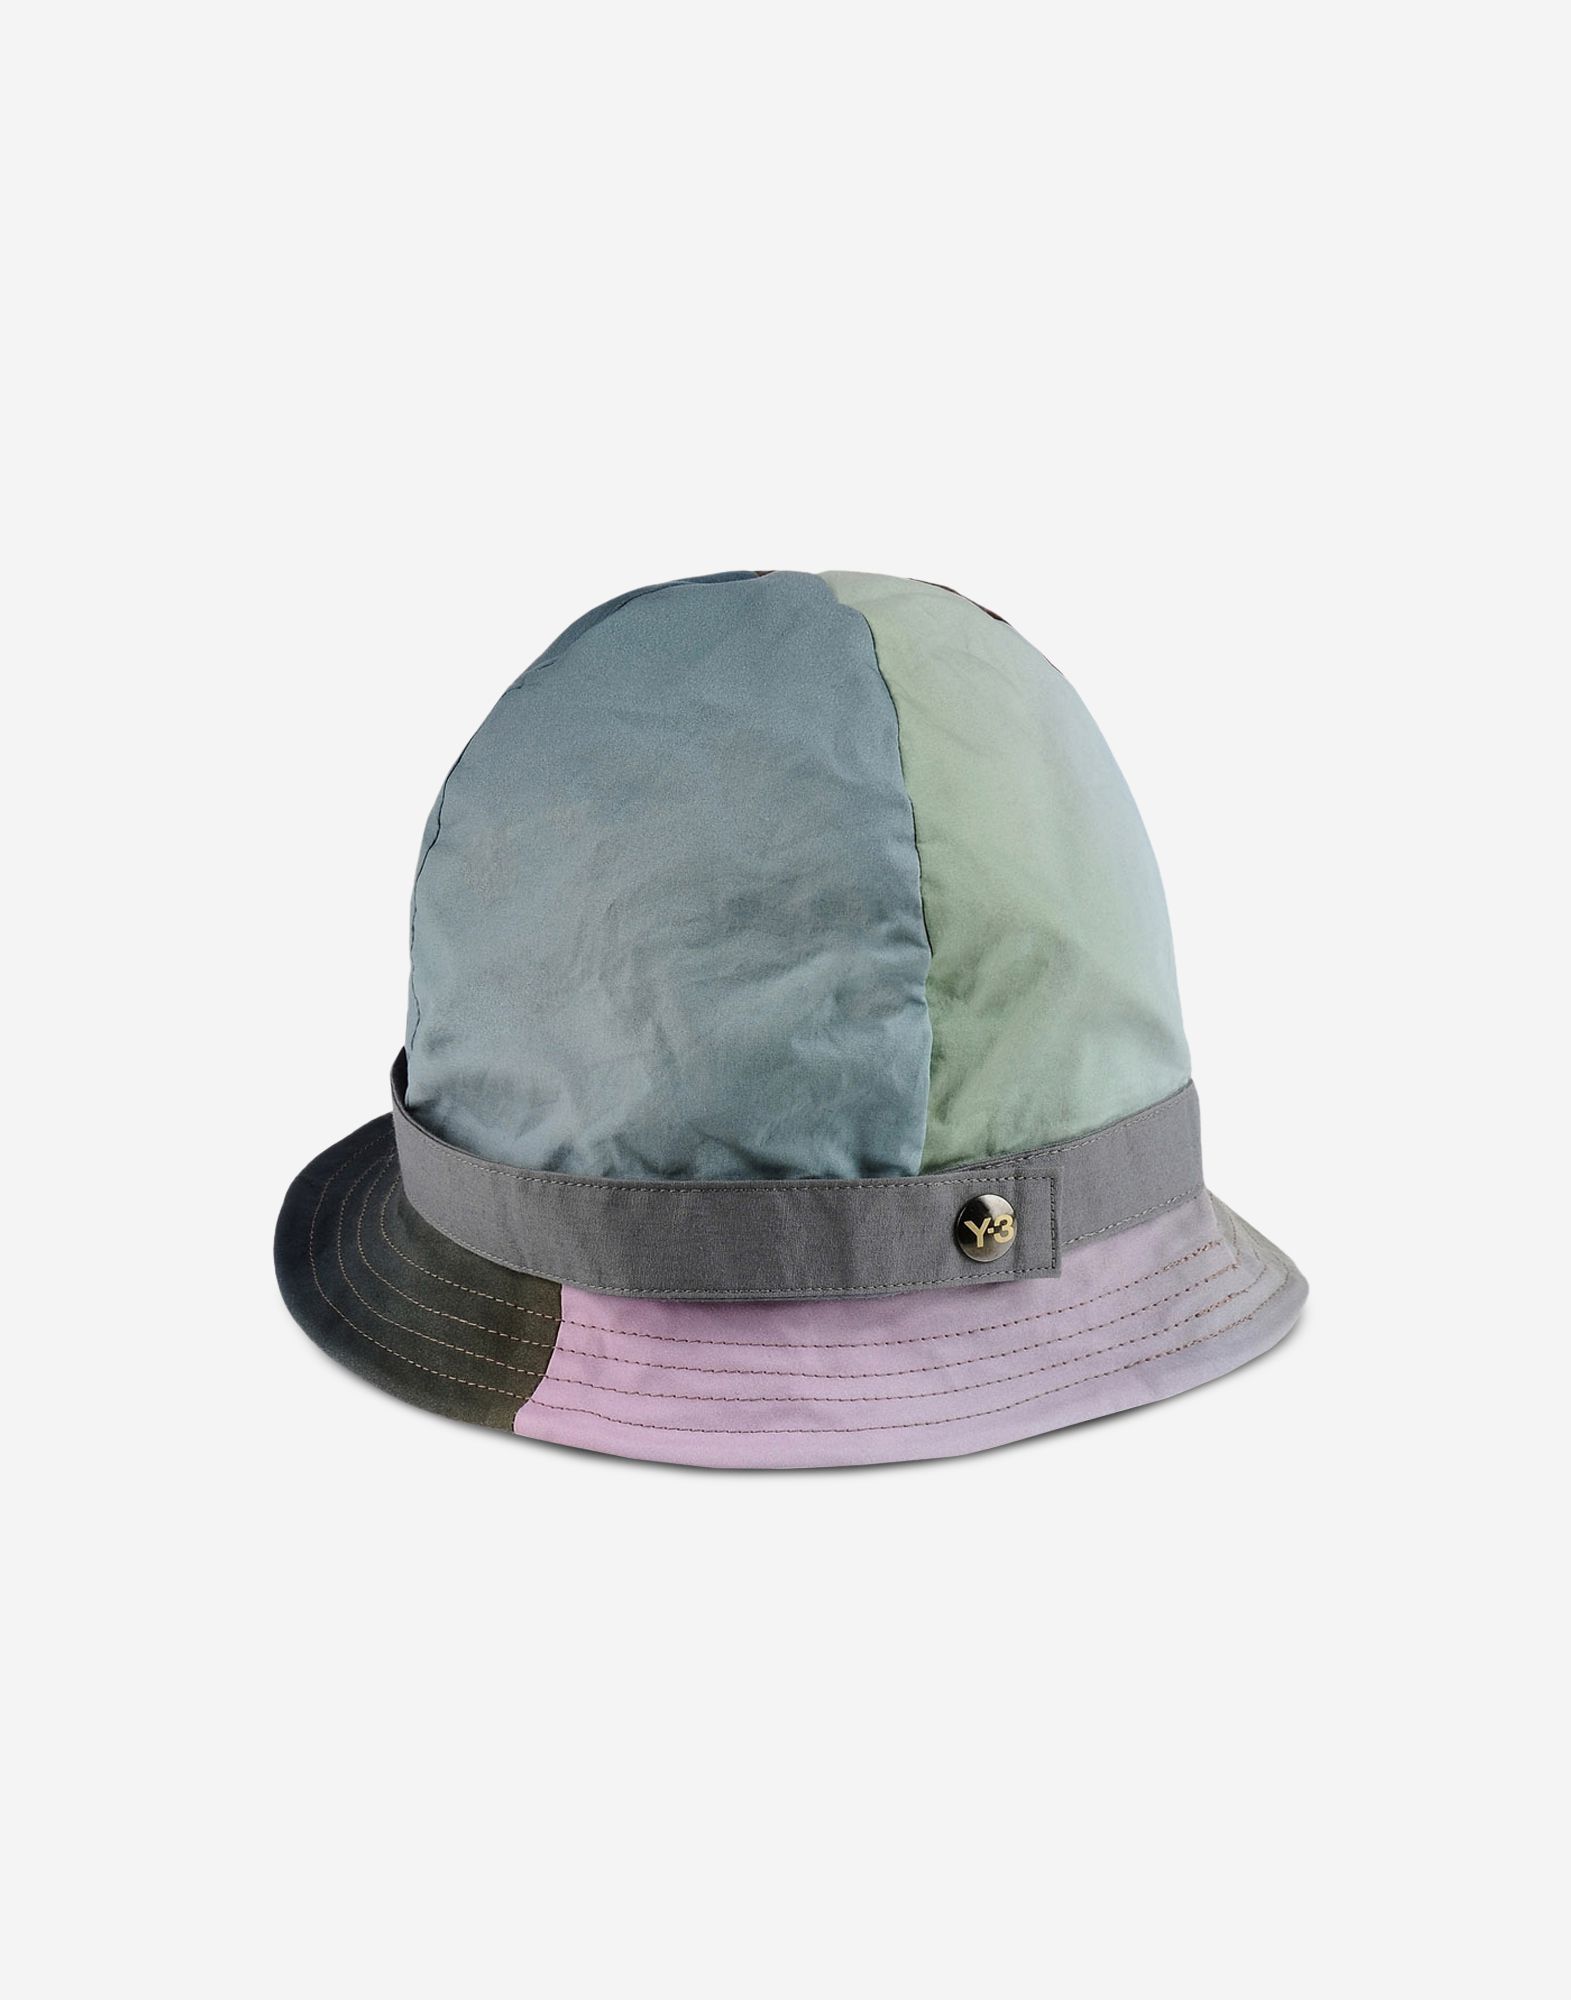 Y-3 Blur Hobo Hat/Правильная панама!